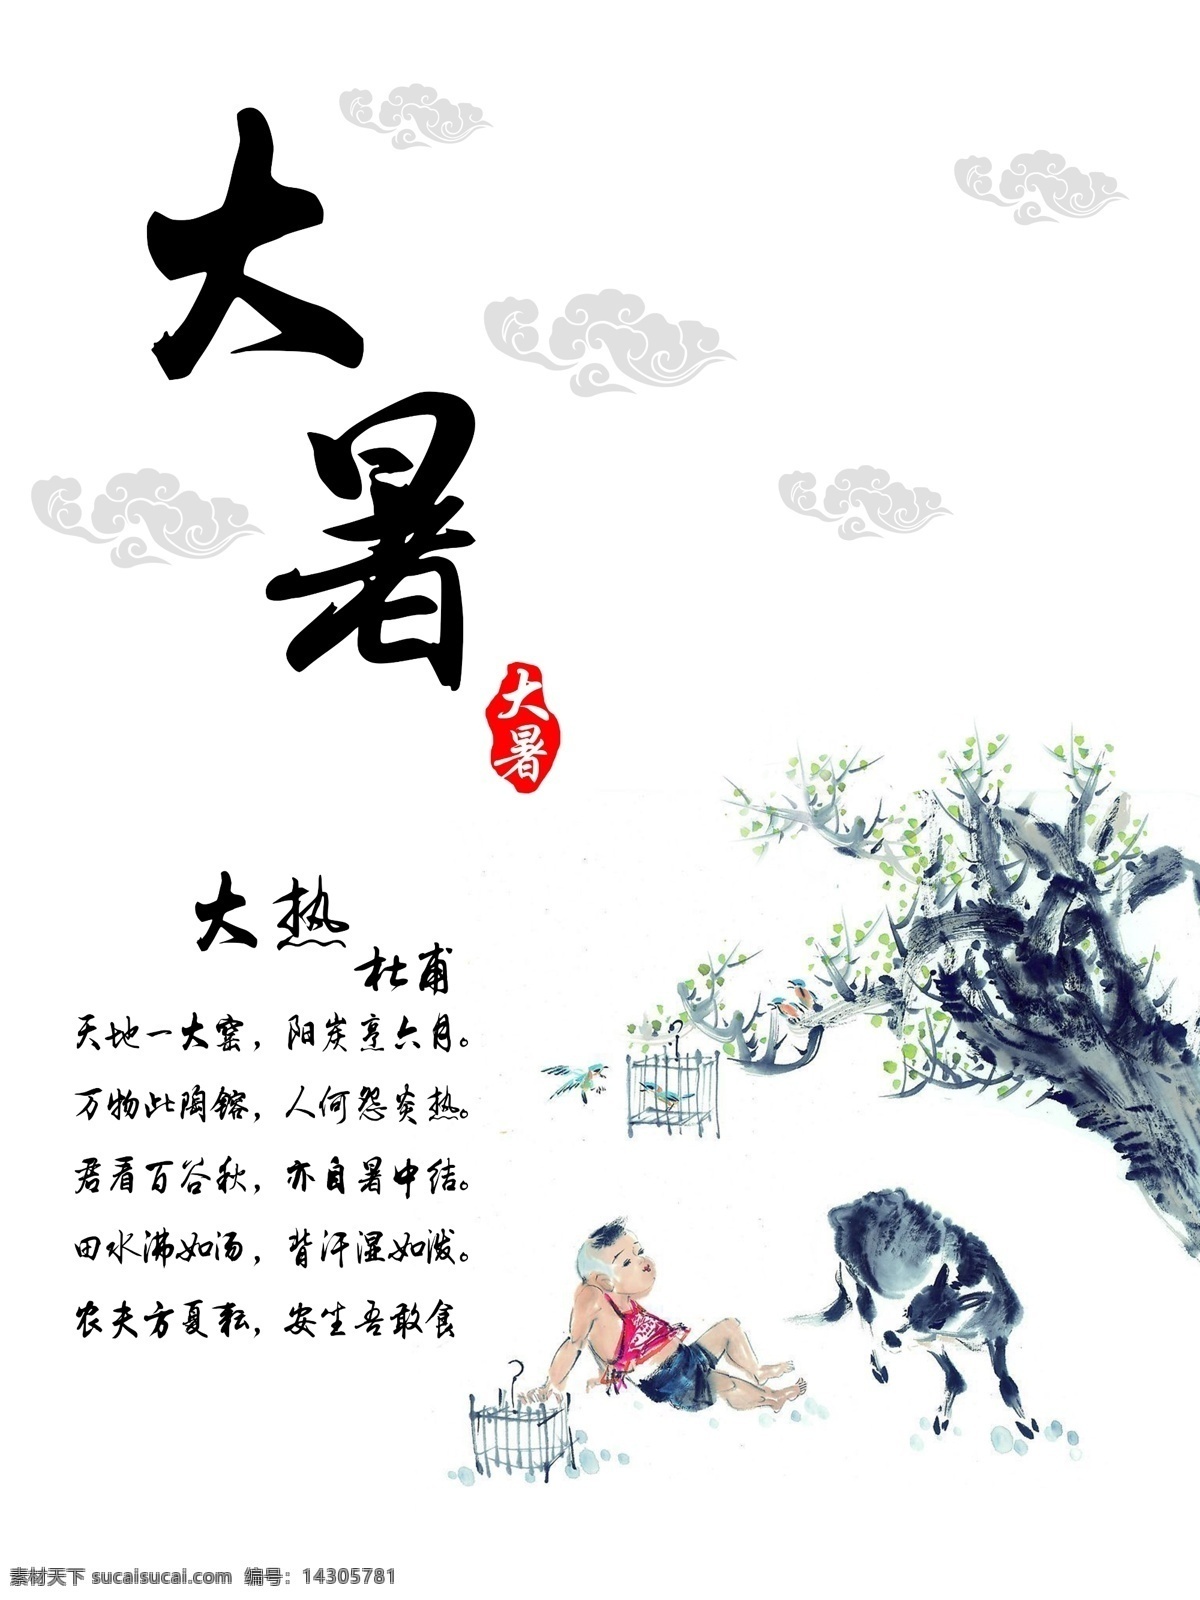 水墨 风情 传统 节气 大暑 中国 风 节日 海报 儿童 树木 笼子 鸟 祥云 动物 中国风